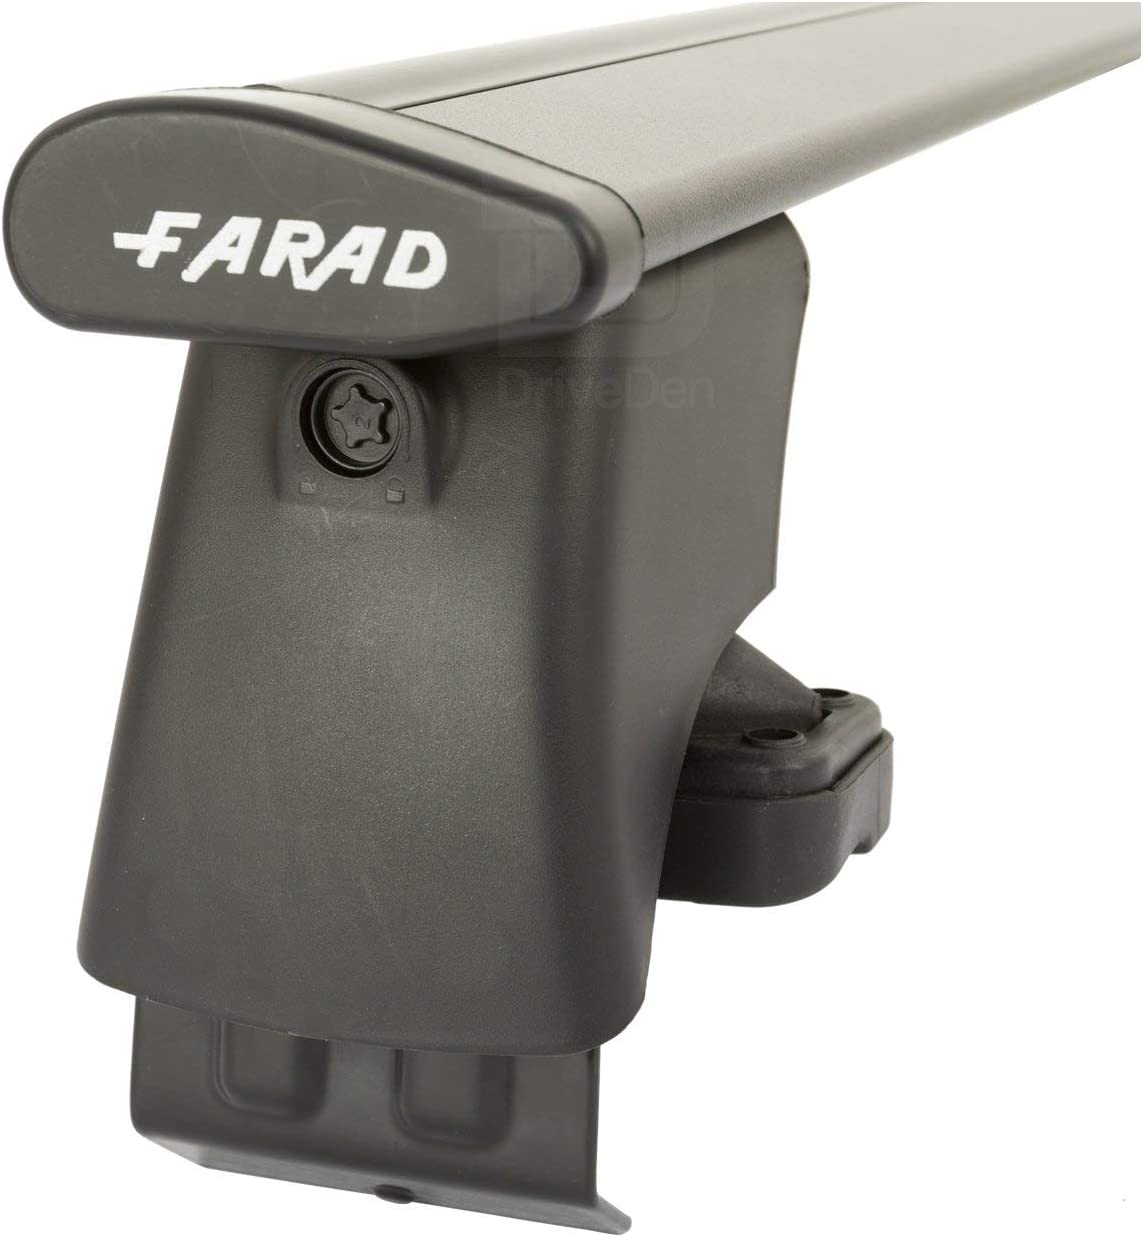 FARAD-Kit H2 per barre portatutto - Skoda Fabia 2007-2014 (senza corrimano)